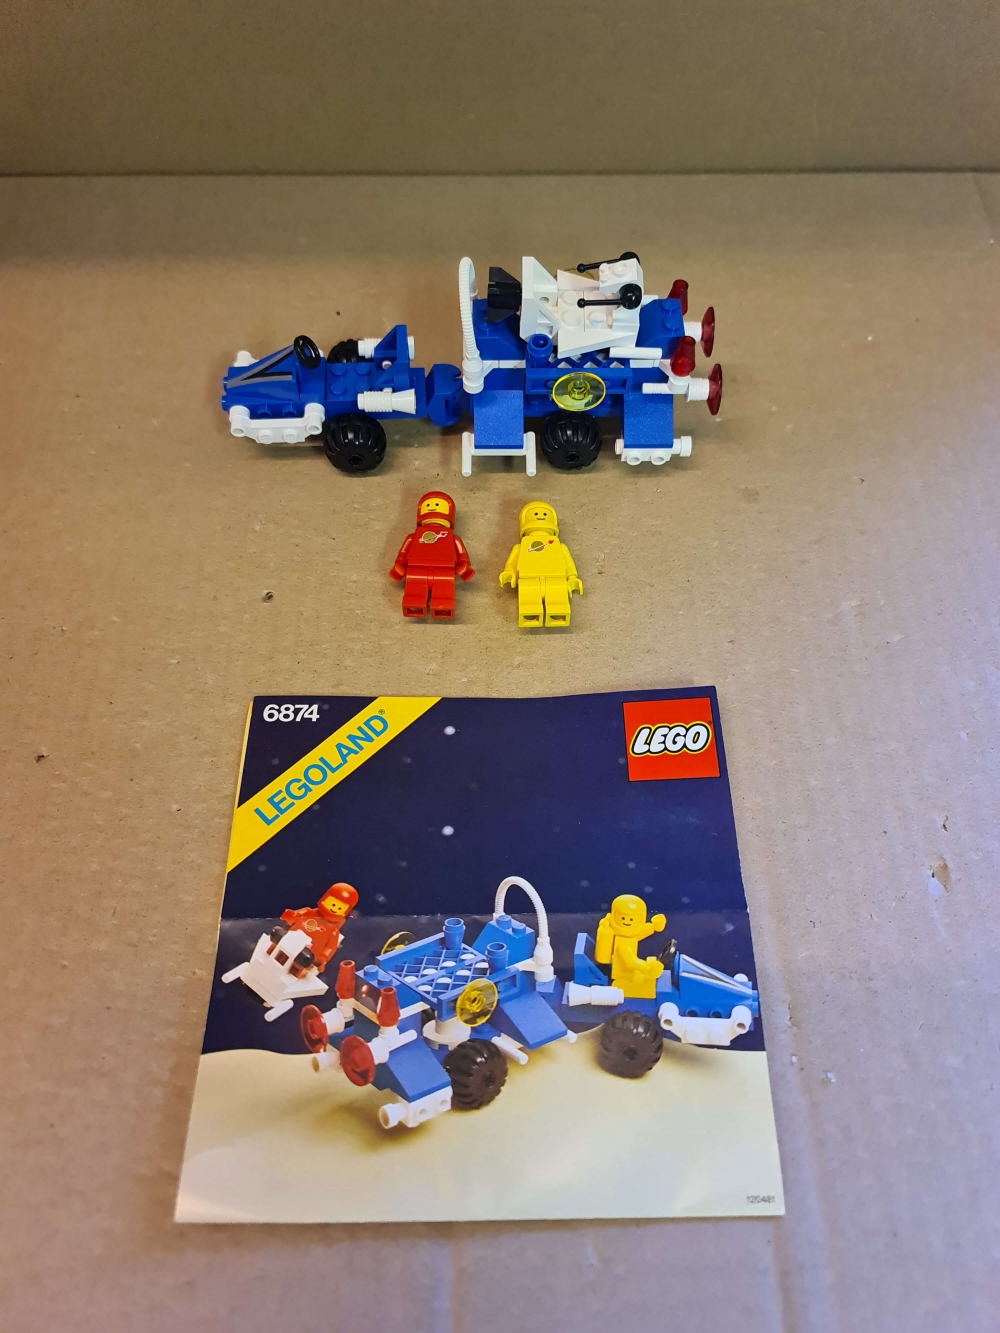 Sett 6874 fra Lego Classic Space serien.
Nydelig sett. Ingen misfarging.
Komplett med manual.